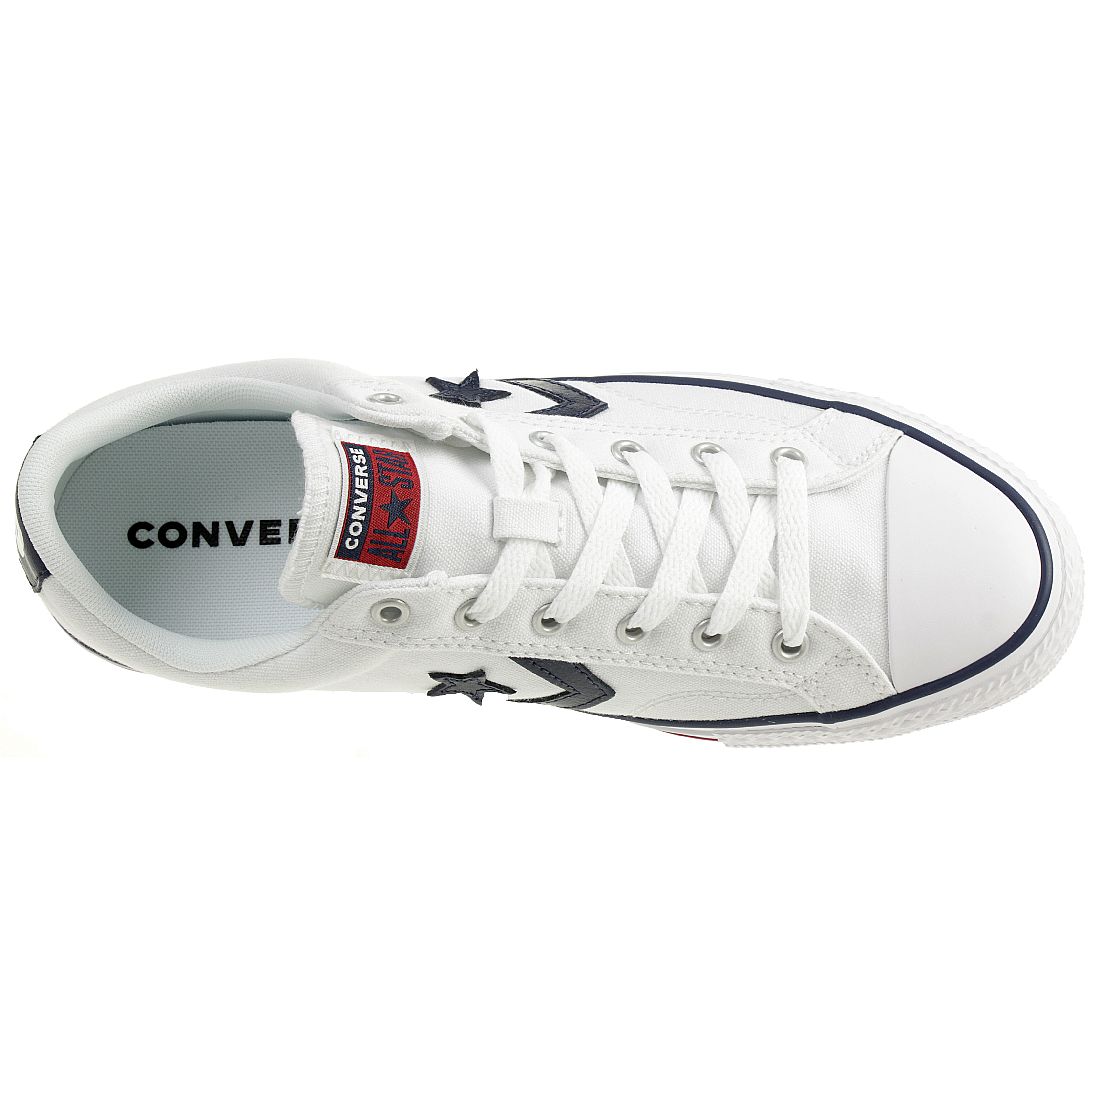 Converse STAR PLAYER OX Schuhe Sneaker Canvas Unisex Weiss 144151C